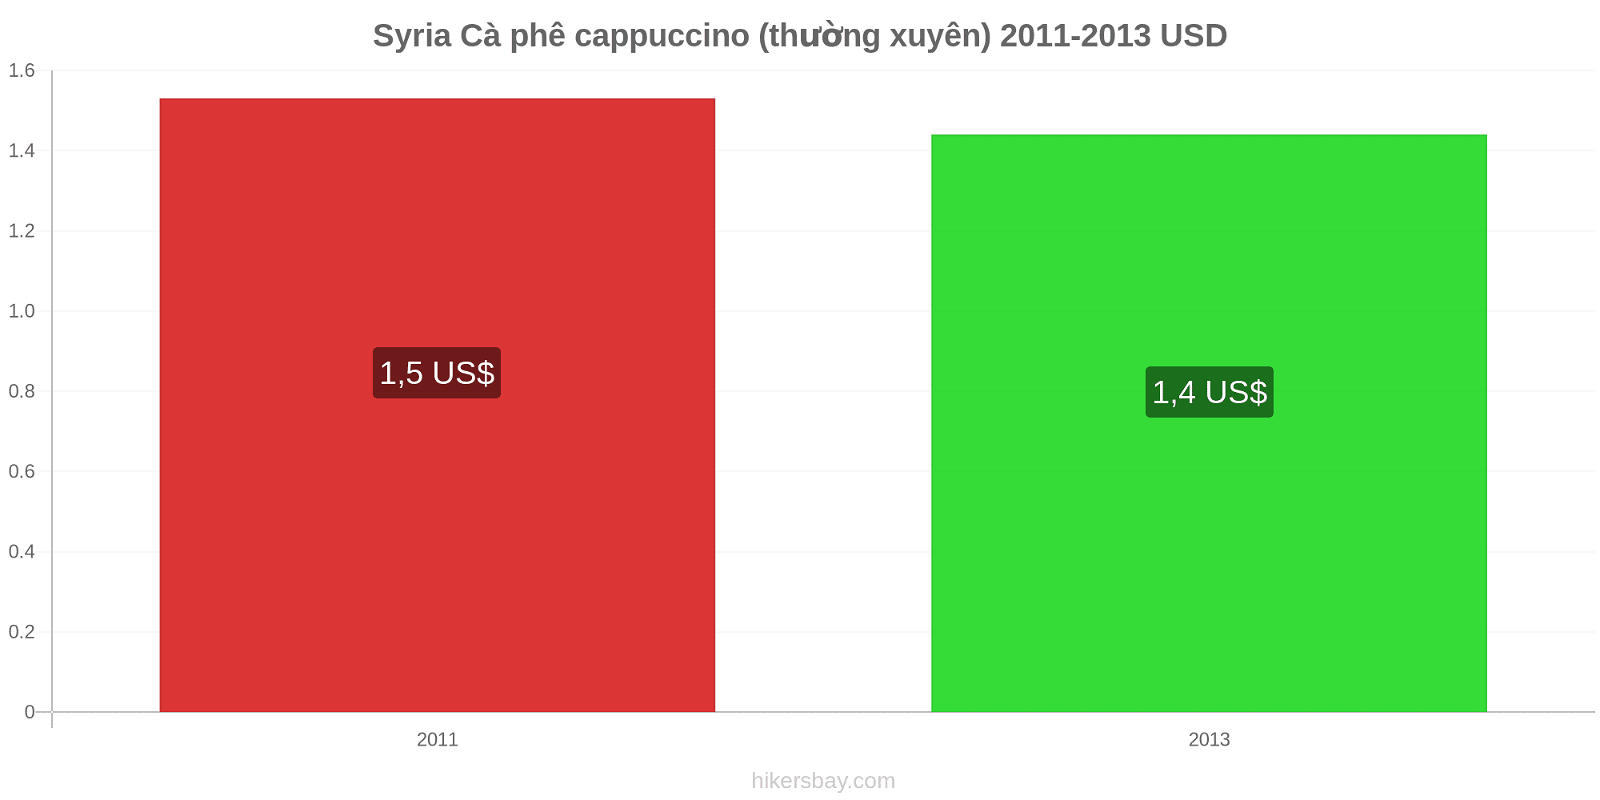 Syria thay đổi giá cả Cà phê cappuccino hikersbay.com